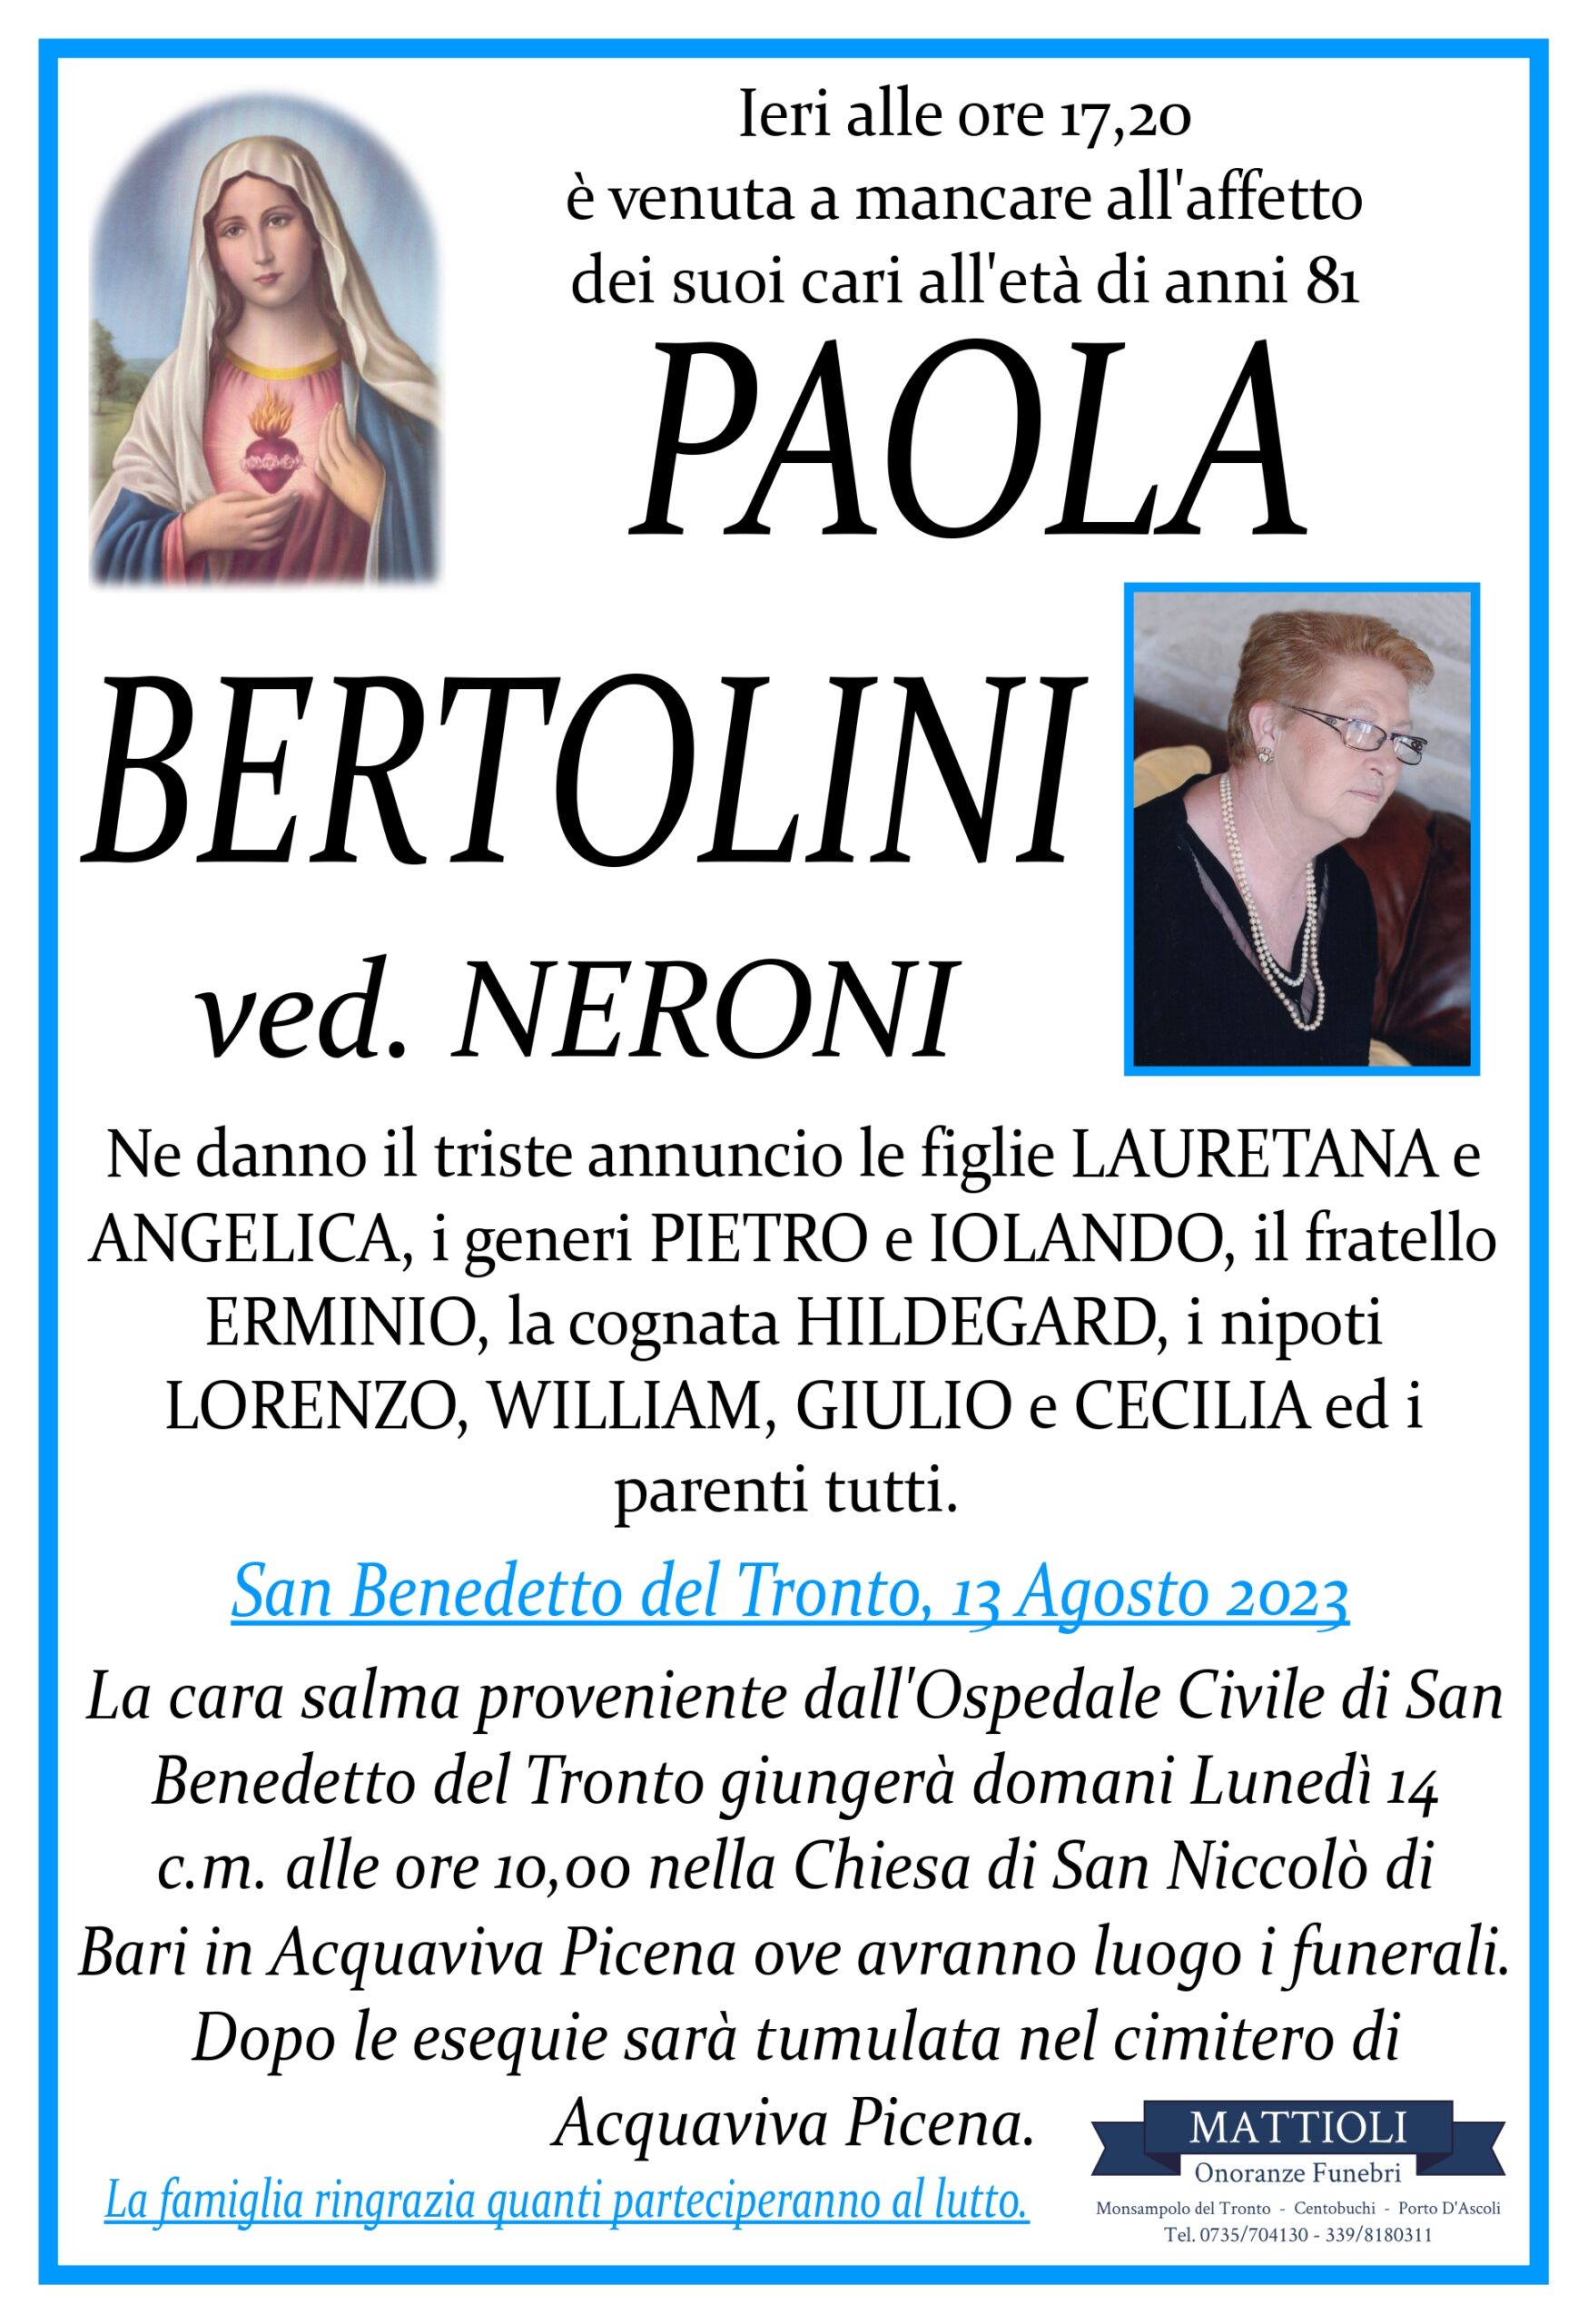 Paola Bertolini